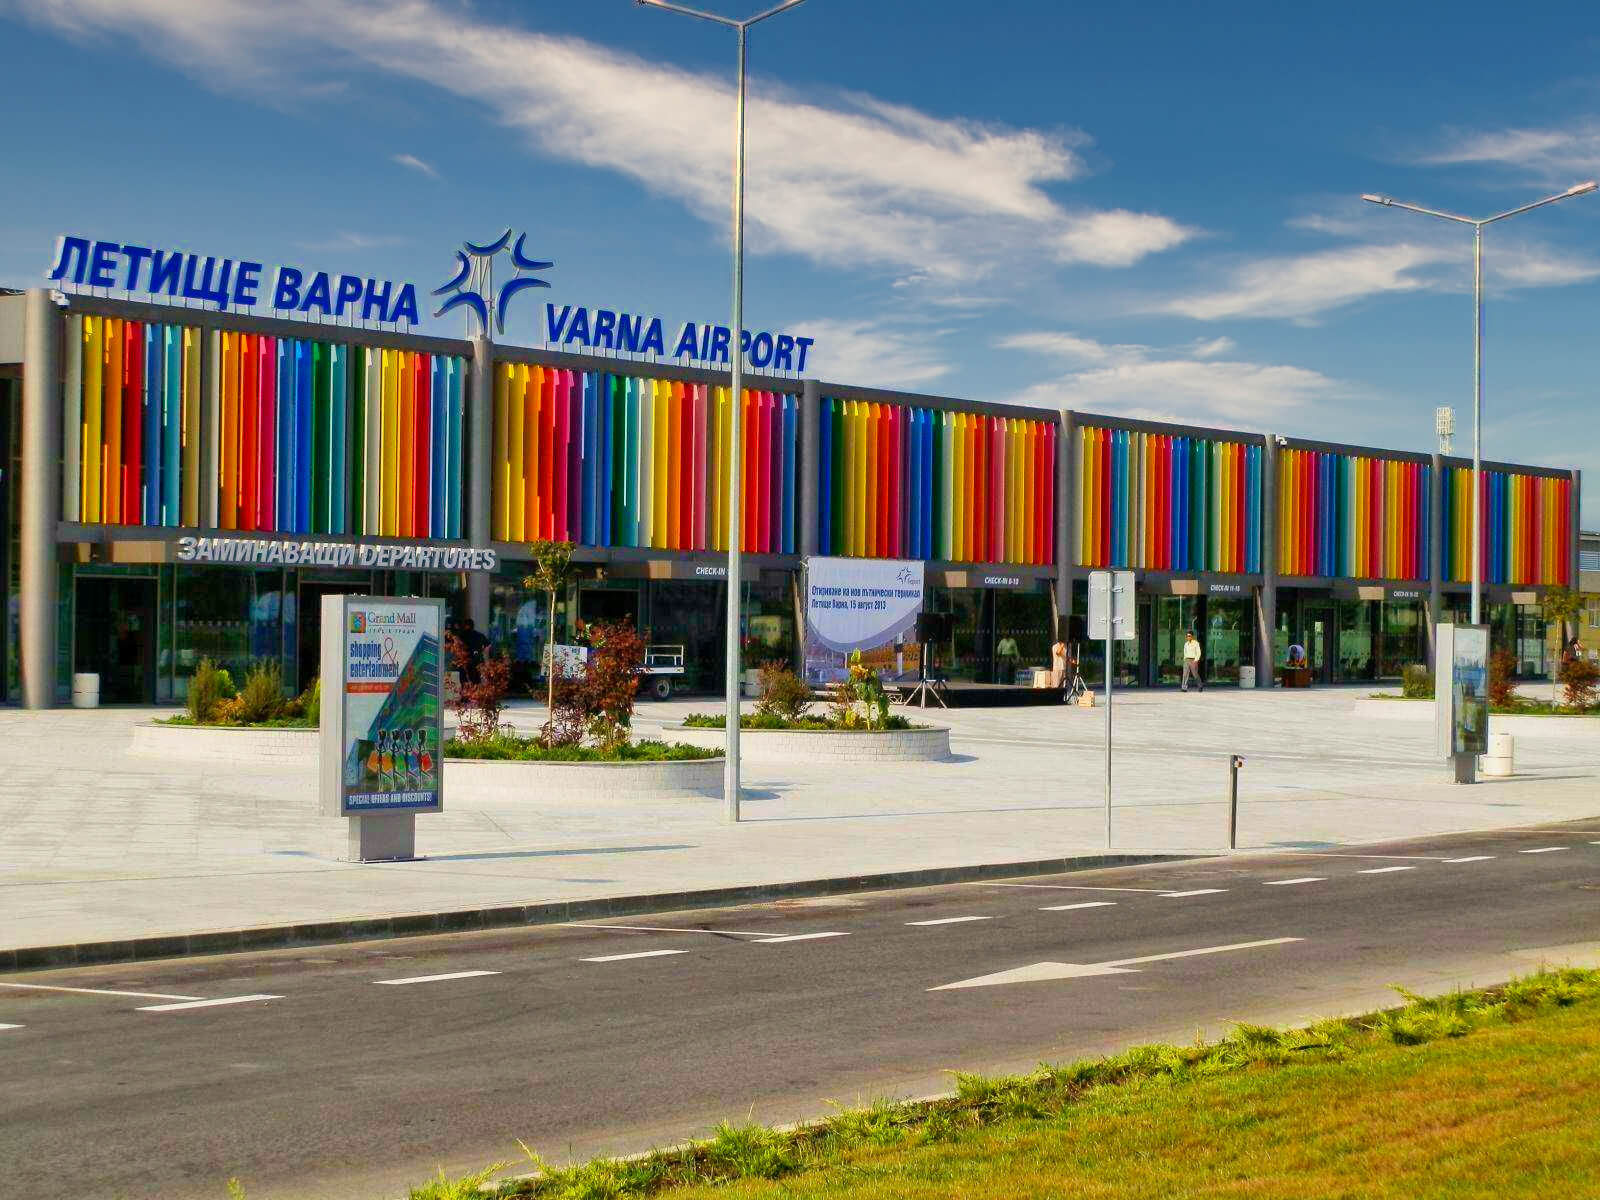 Airport Varna